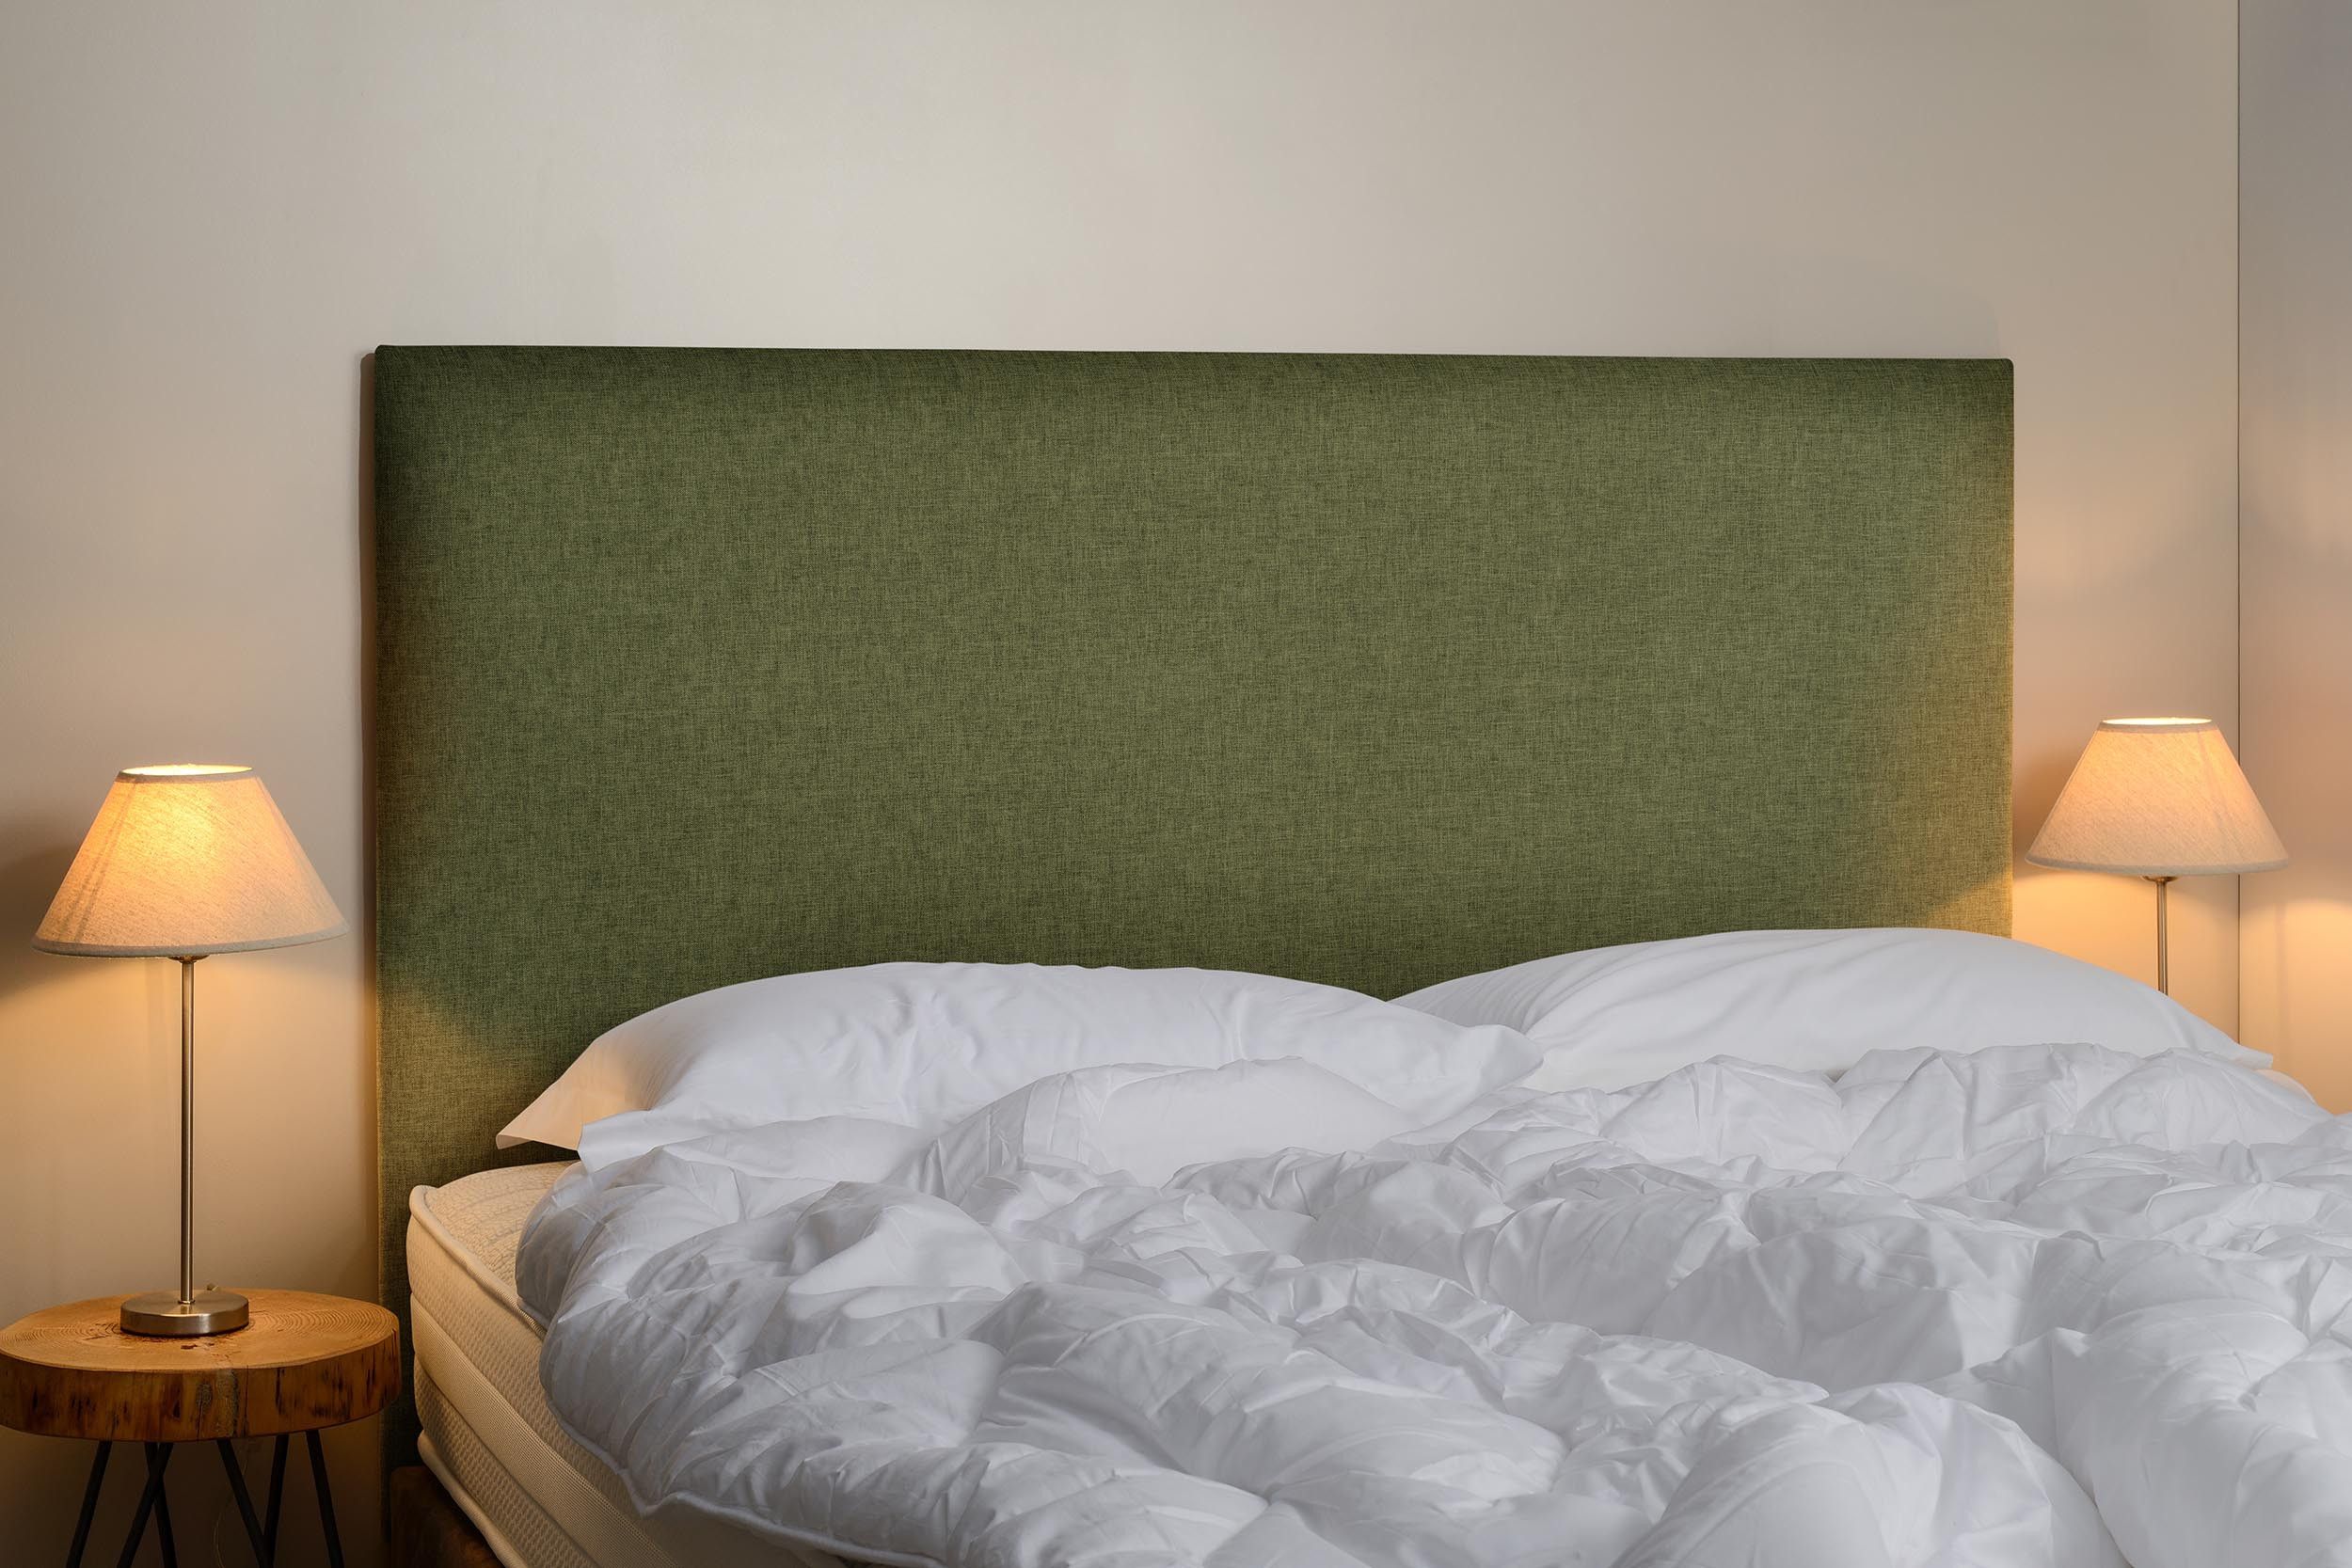 Tête de lit, pas cher, coton, vert , bois, chambre, déco, confortable, campagne, 90,120,140,160,180